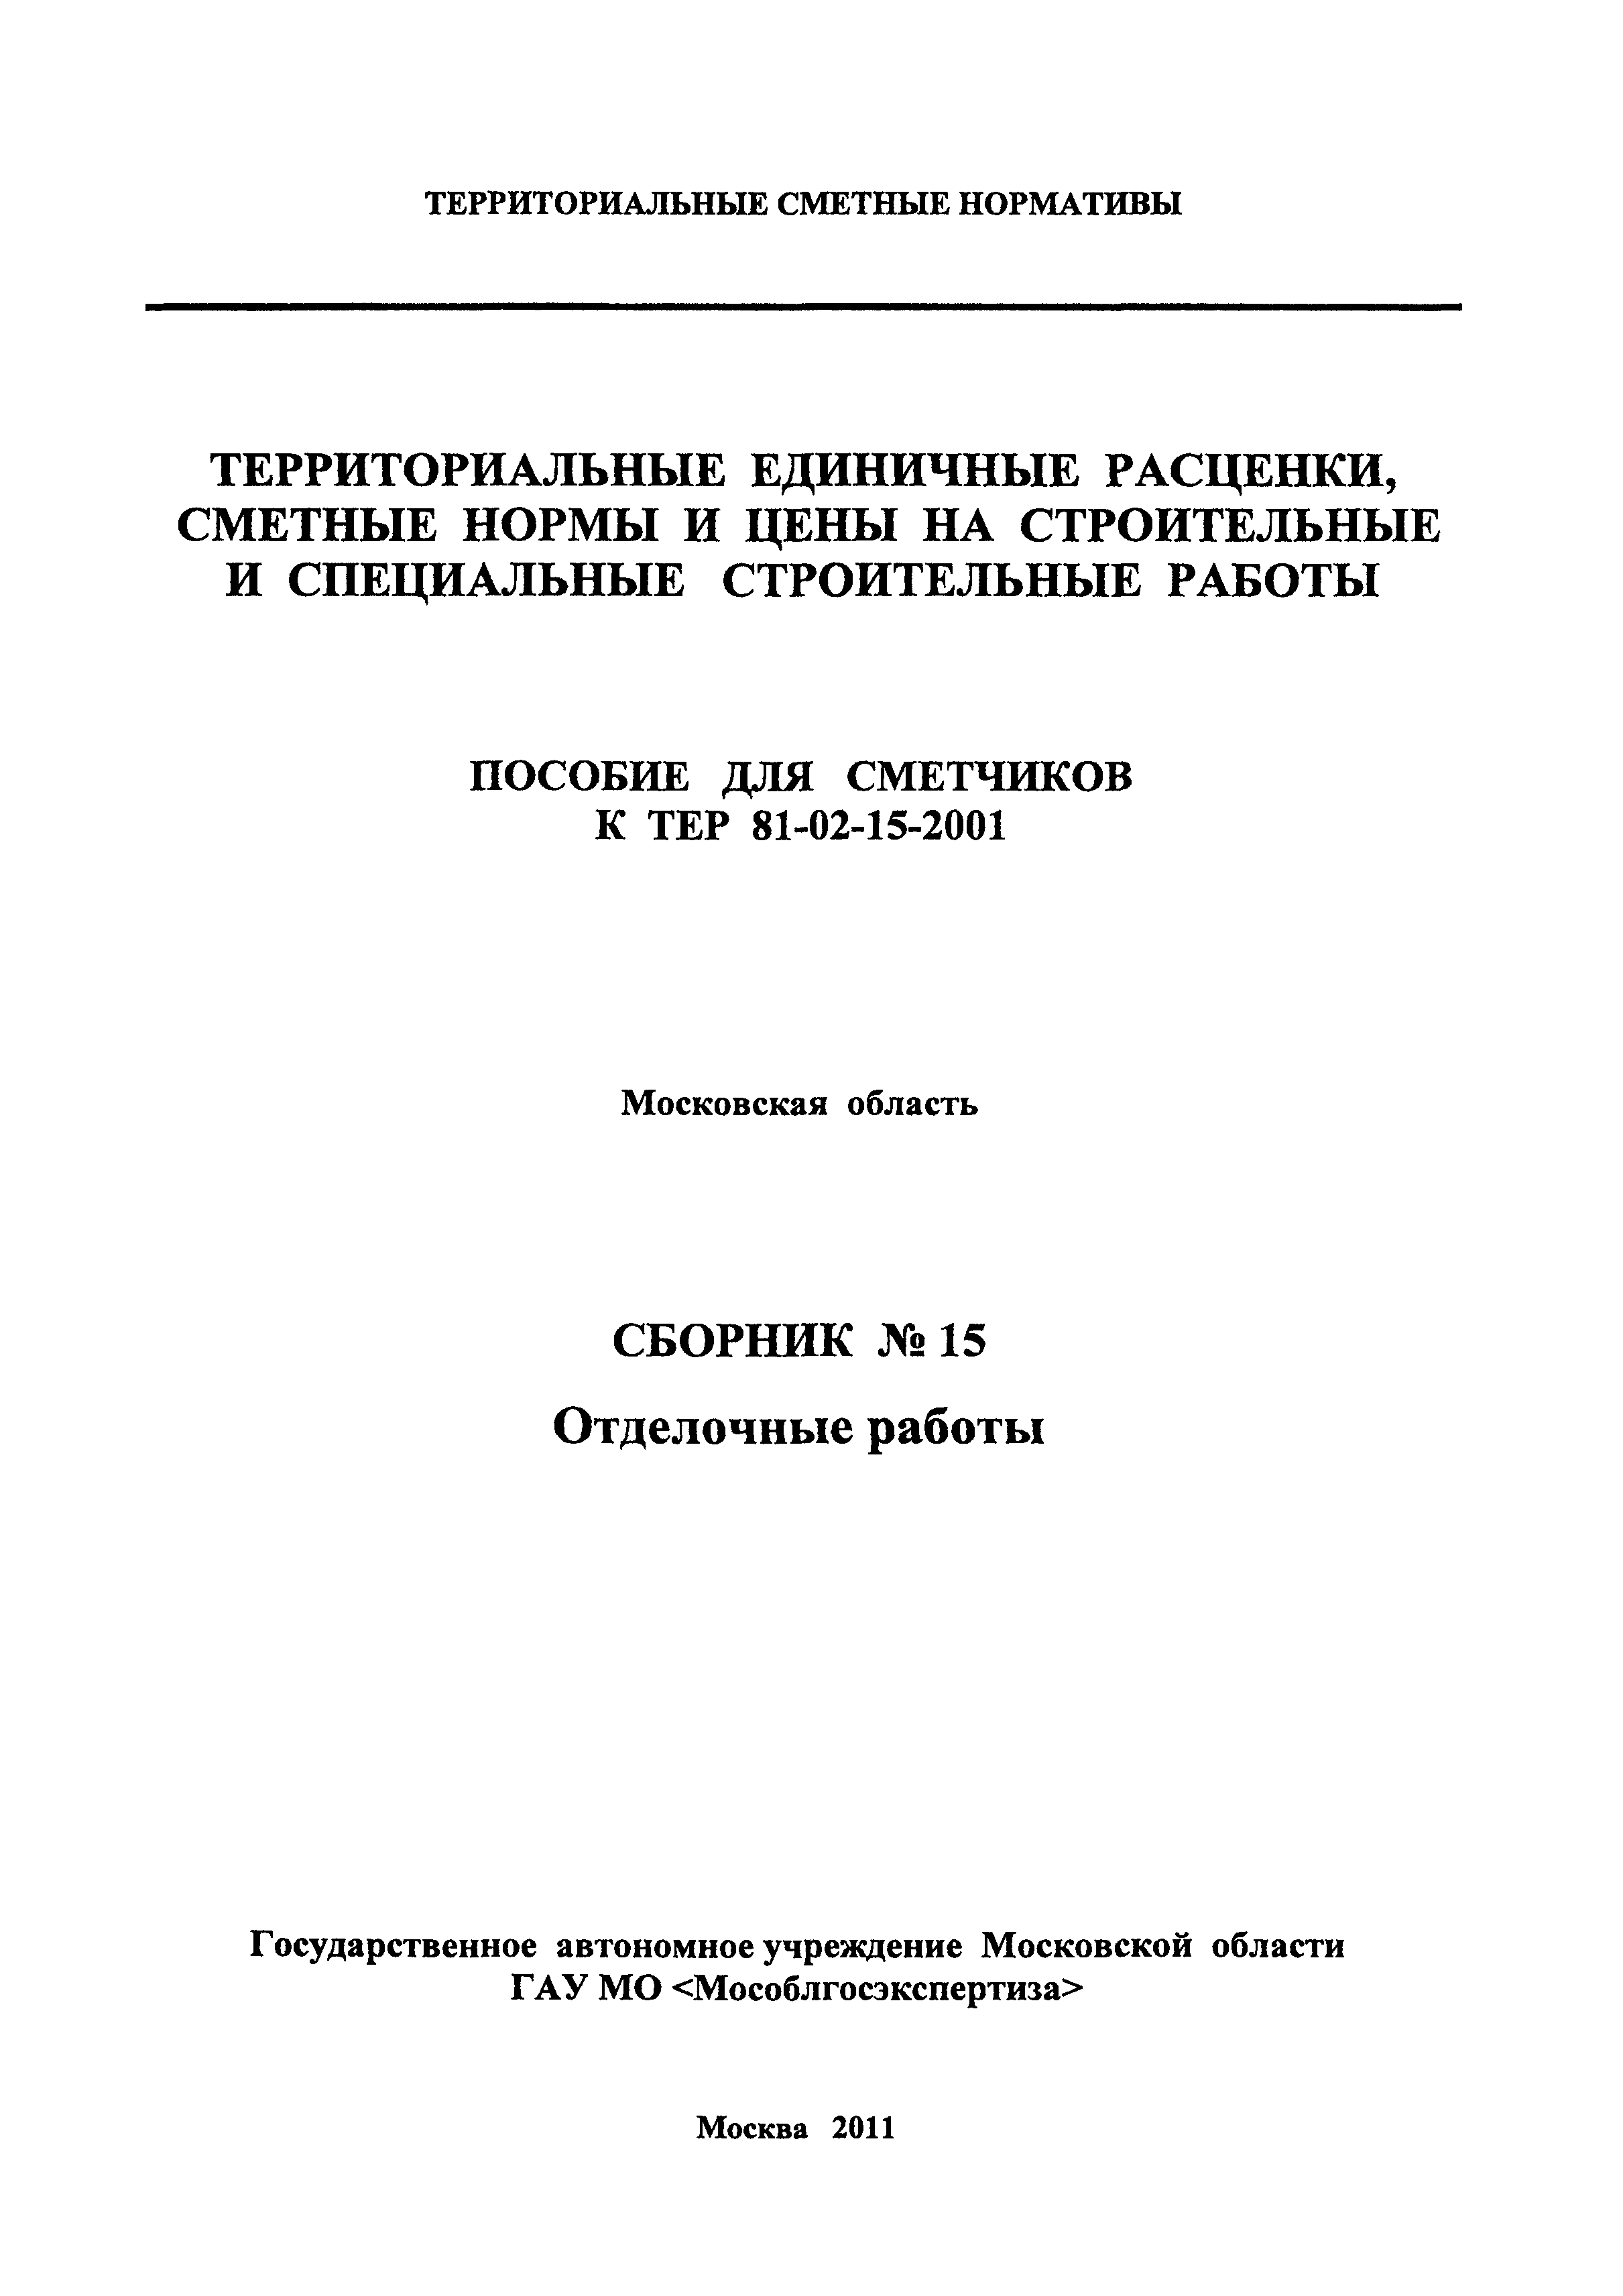 ГЭСНПиТЕР 2001-15 Московской области